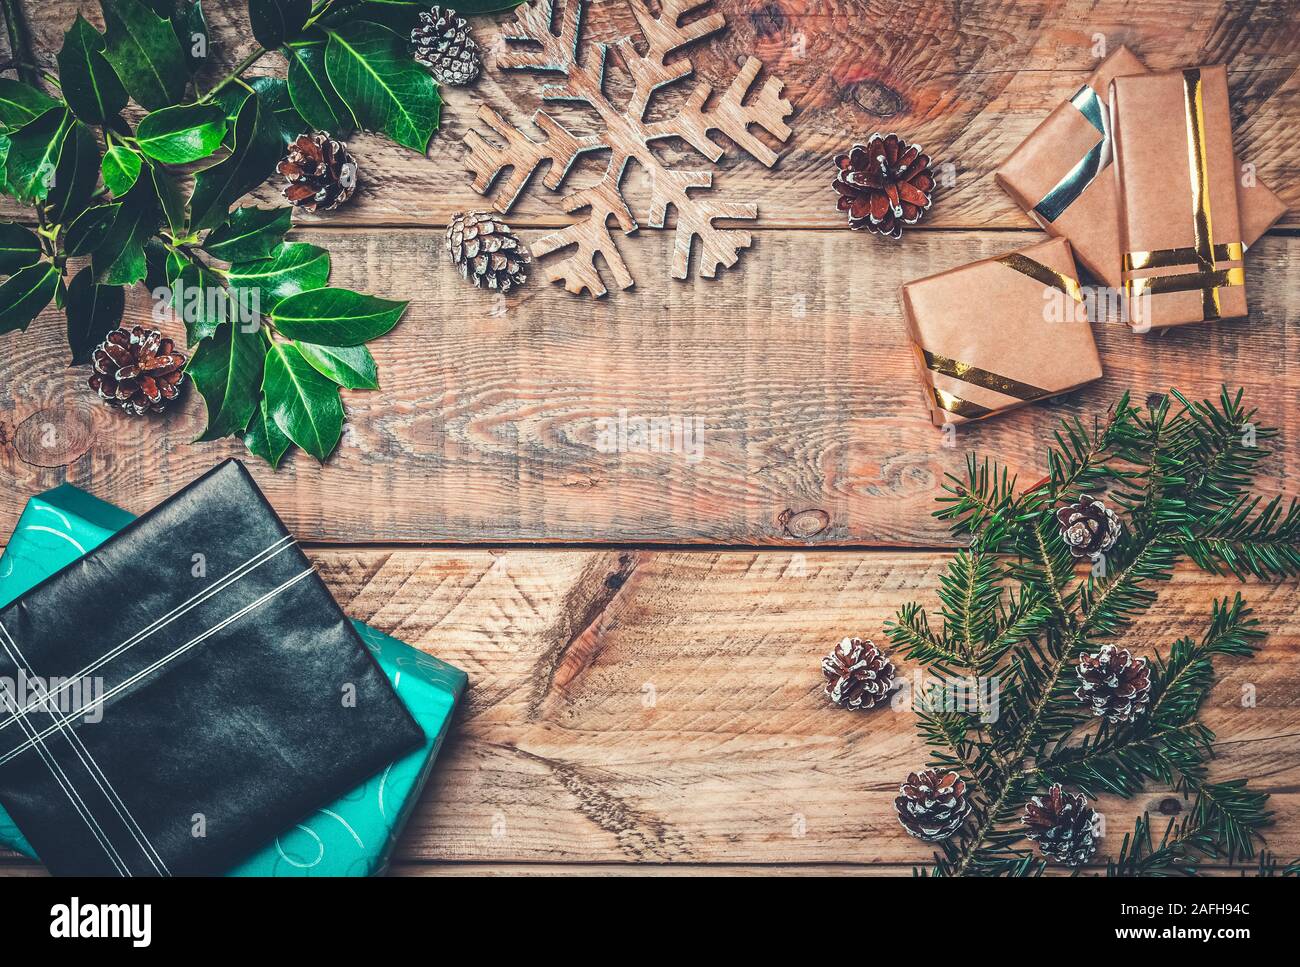 Sentar planas imagen concepto de vacaciones de navidad con regalos, rama de abeto, madera de estrella de nieve y las piñas. Copie el espacio en el centro. Foto de stock